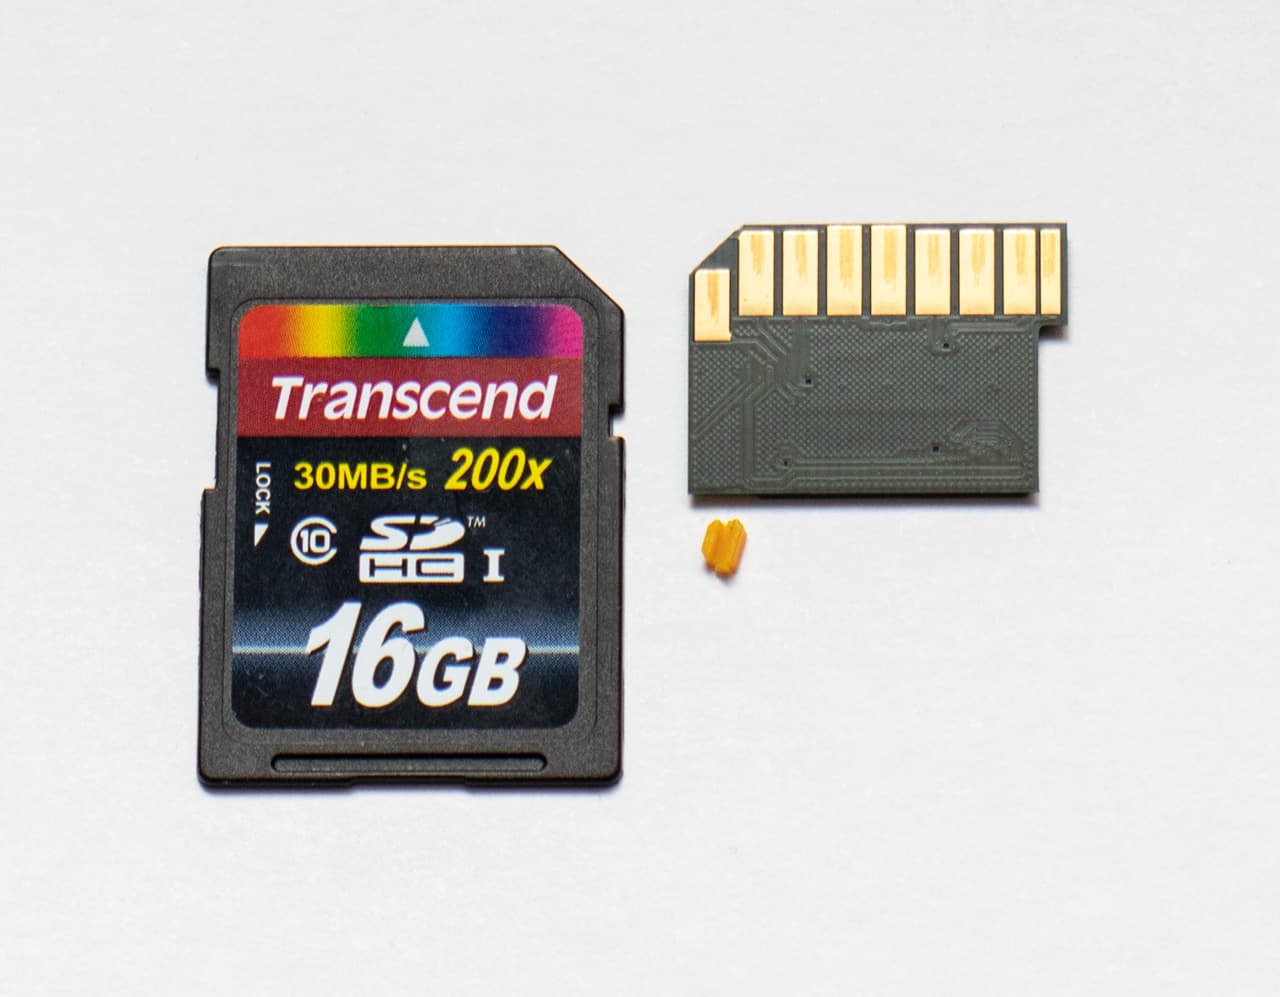 Плата толщиной < 0,25 мм на чипе памяти